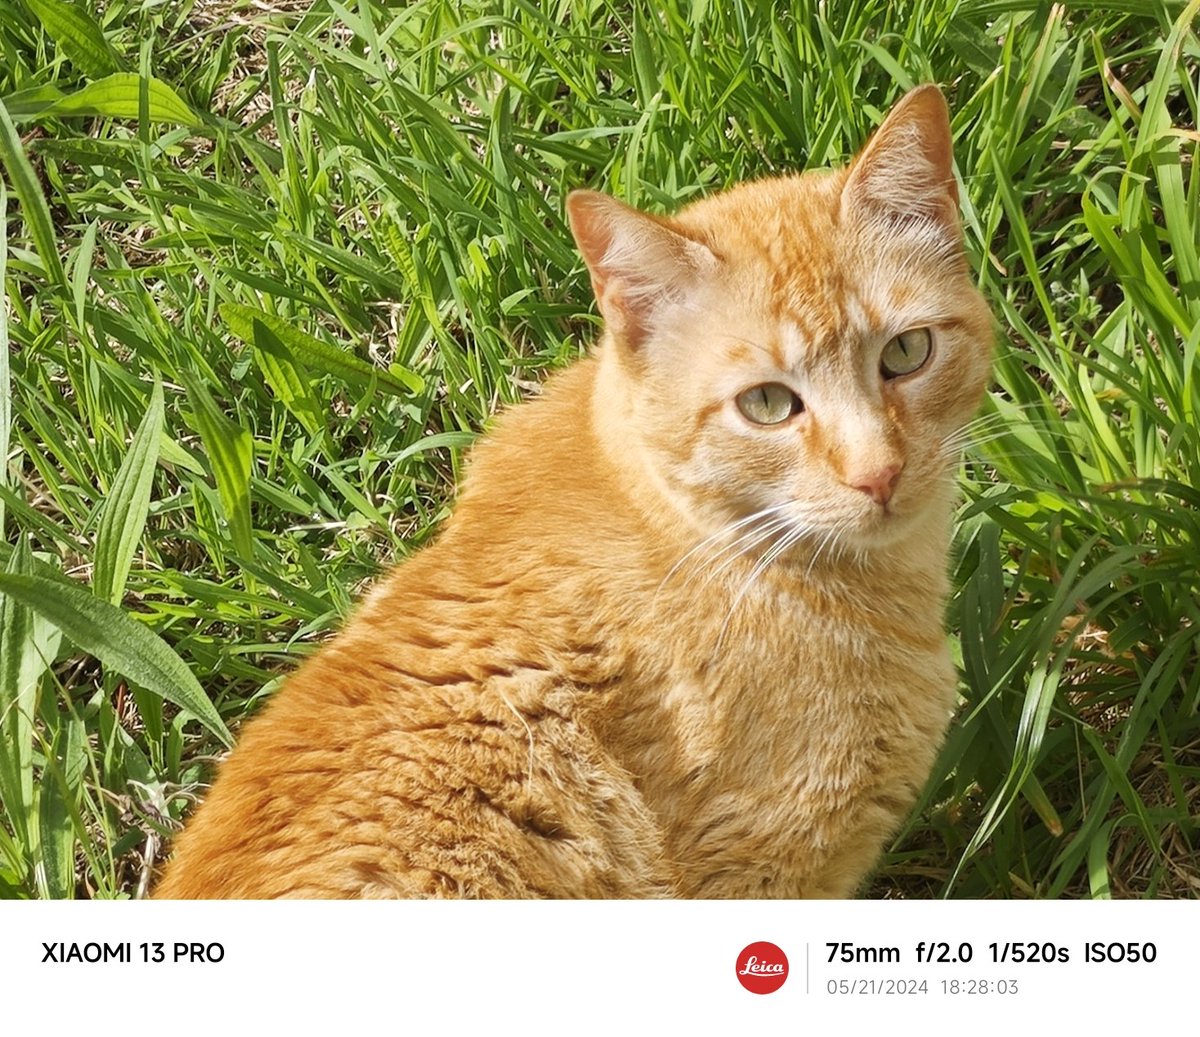 #Cats
#Xiaomi #Xiaomi13Pro #shotonsnapdragon
#Xiaomi13series